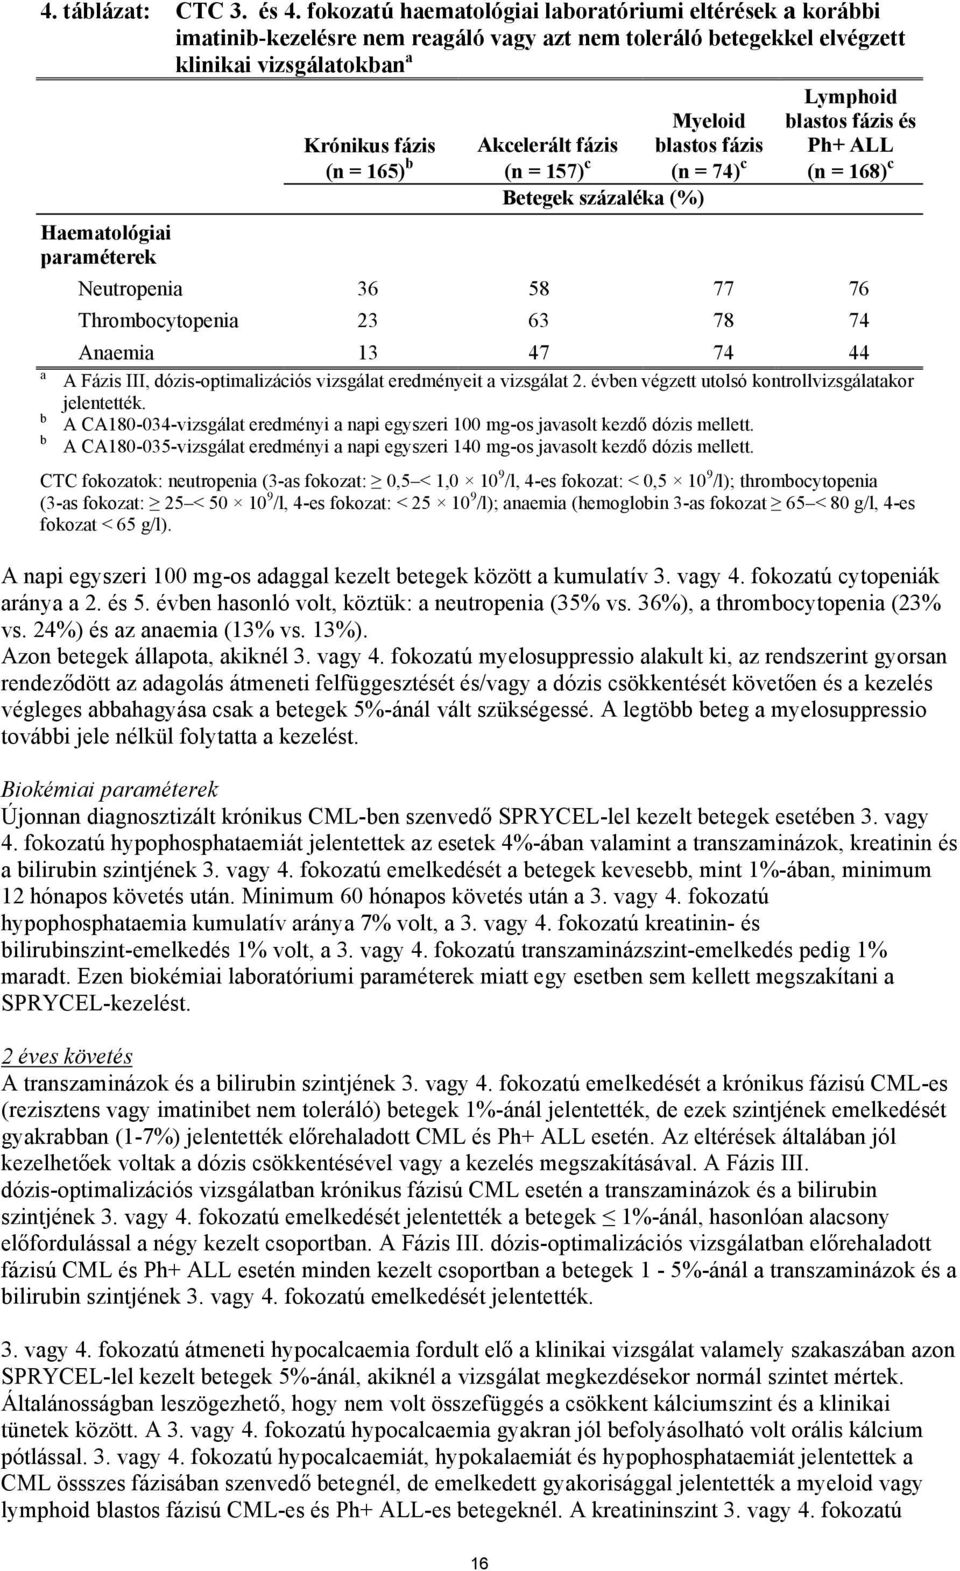 Akcelerált fázis (n = 157) c Myeloid blastos fázis (n = 74) c blastos fázis és Ph+ ALL (n = 168) c Betegek százaléka (%) Haematológiai paraméterek Neutropenia 36 58 77 76 Thrombocytopenia 23 63 78 74